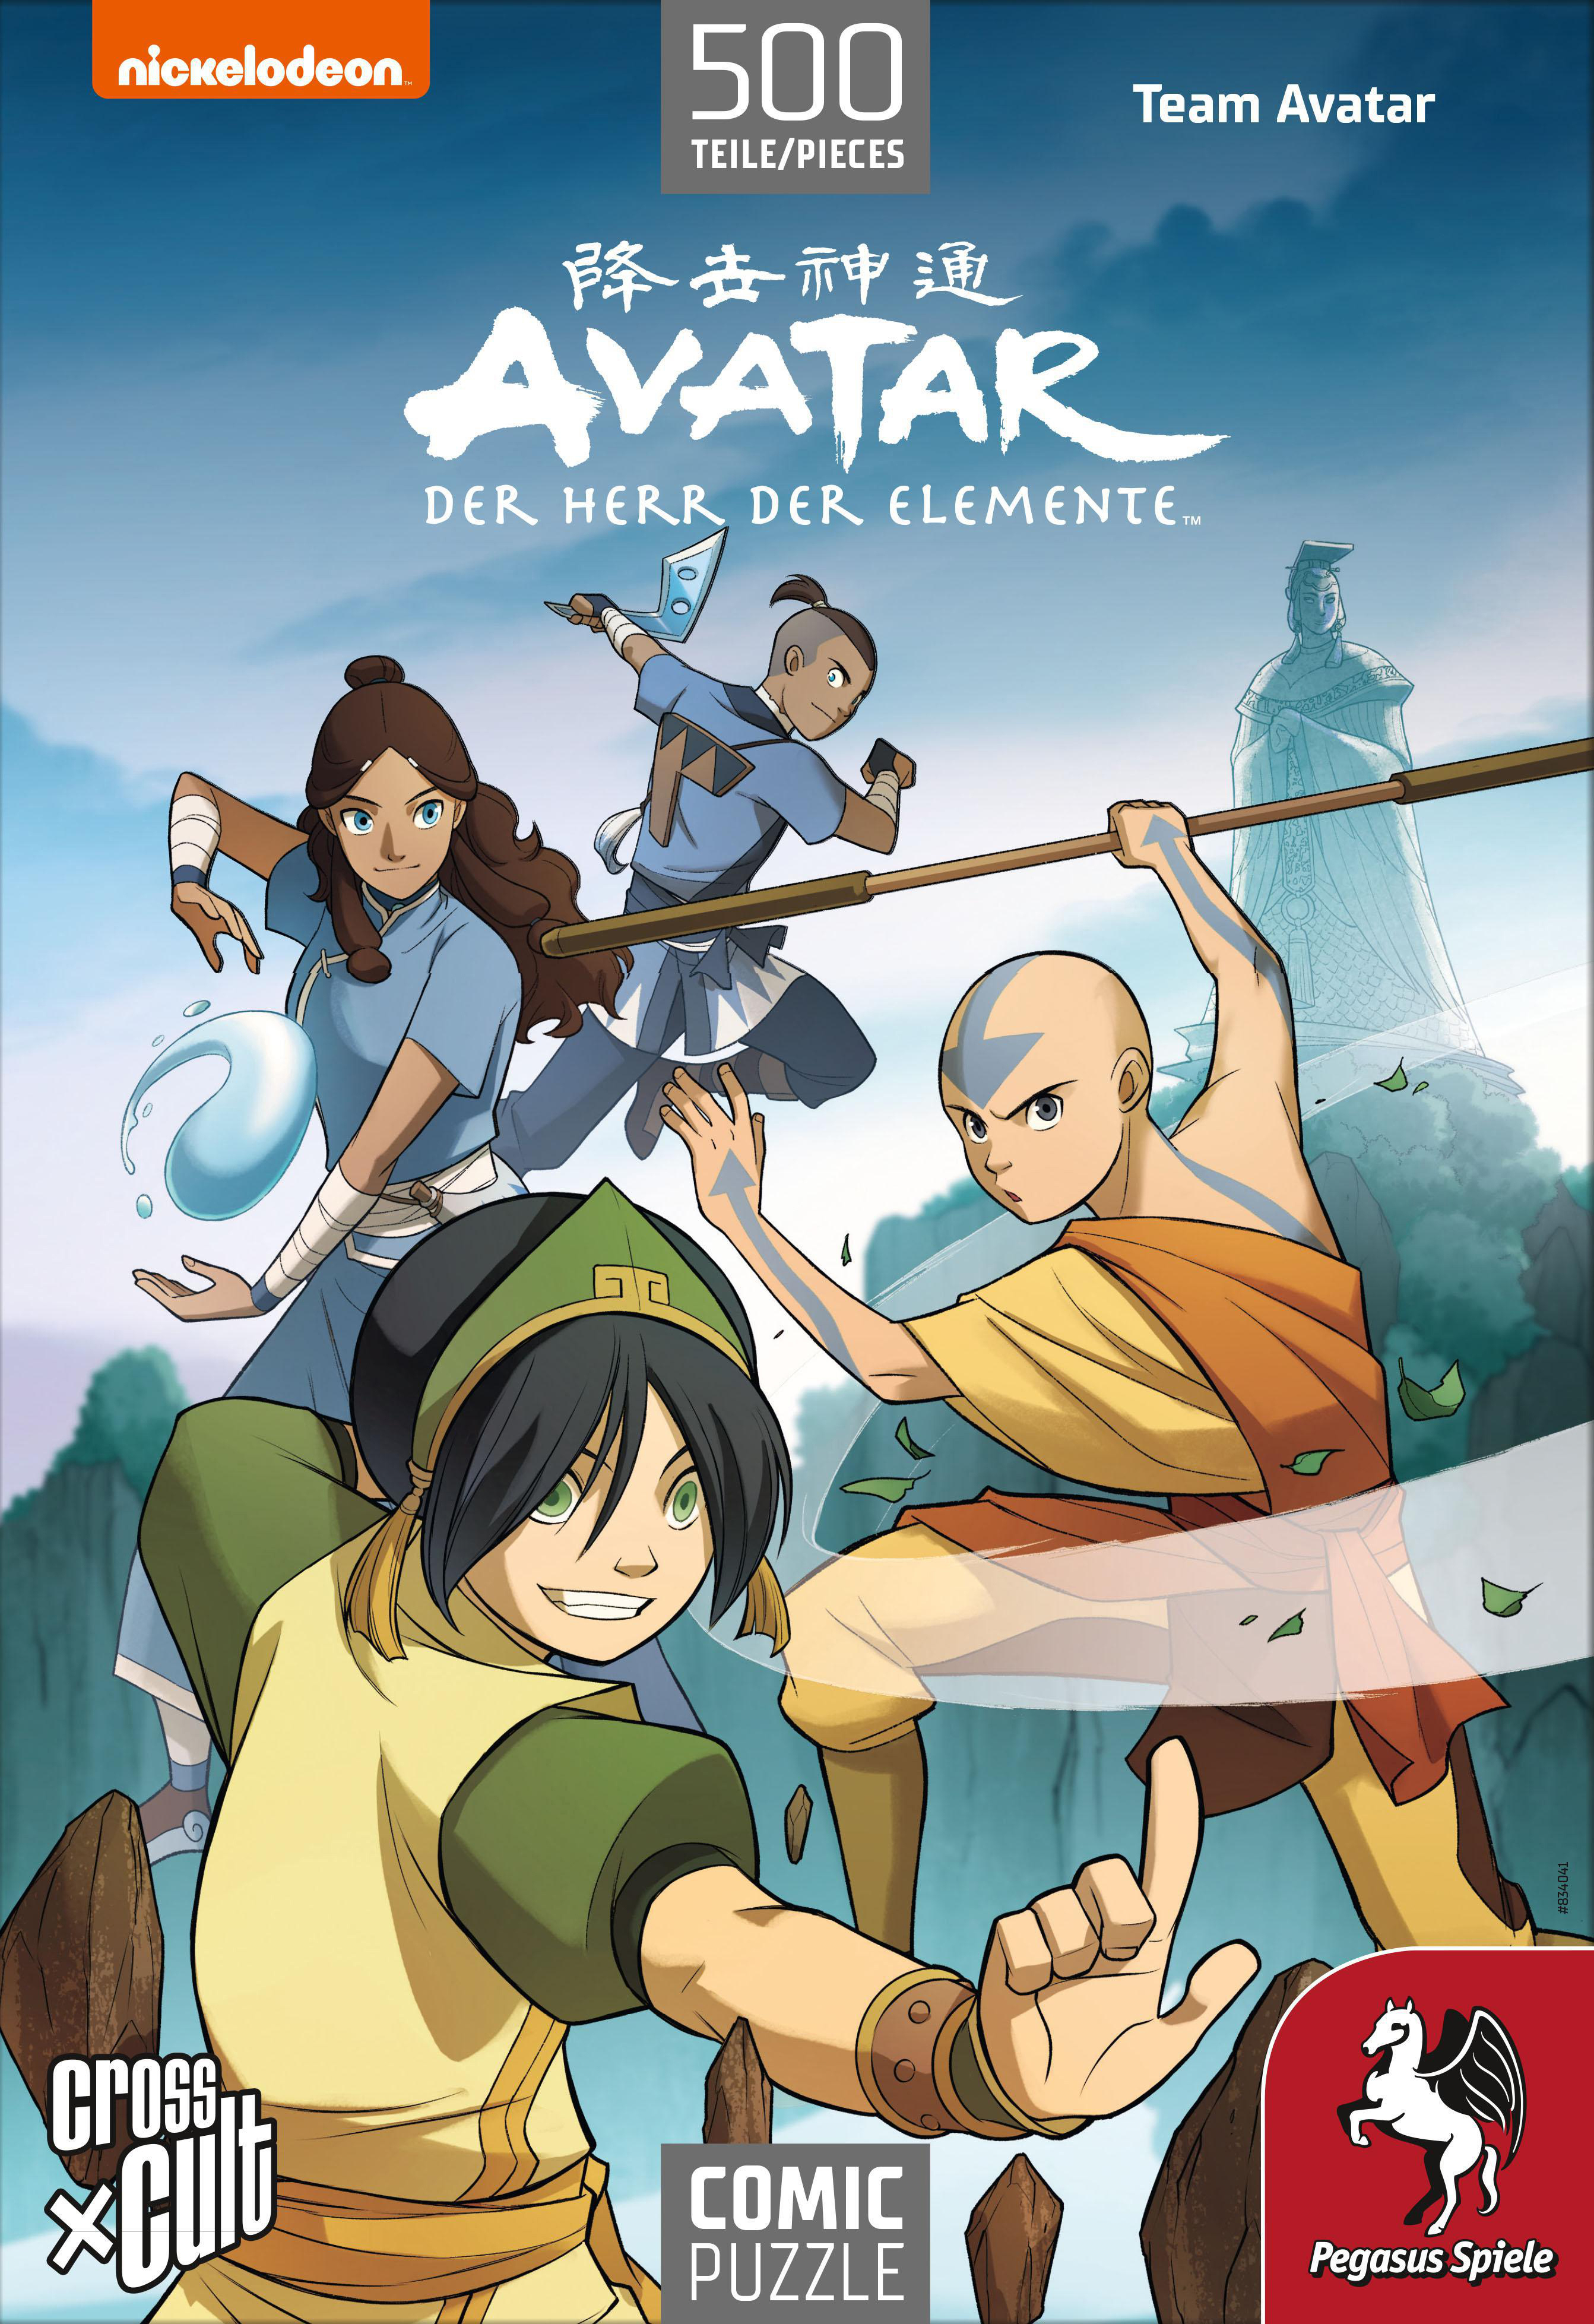 PEGASUS SPIELE Puzzle: Avatar Herr der Der – Puzzle 500 Avatar), Teile Mehrfarbig Elemente (Team